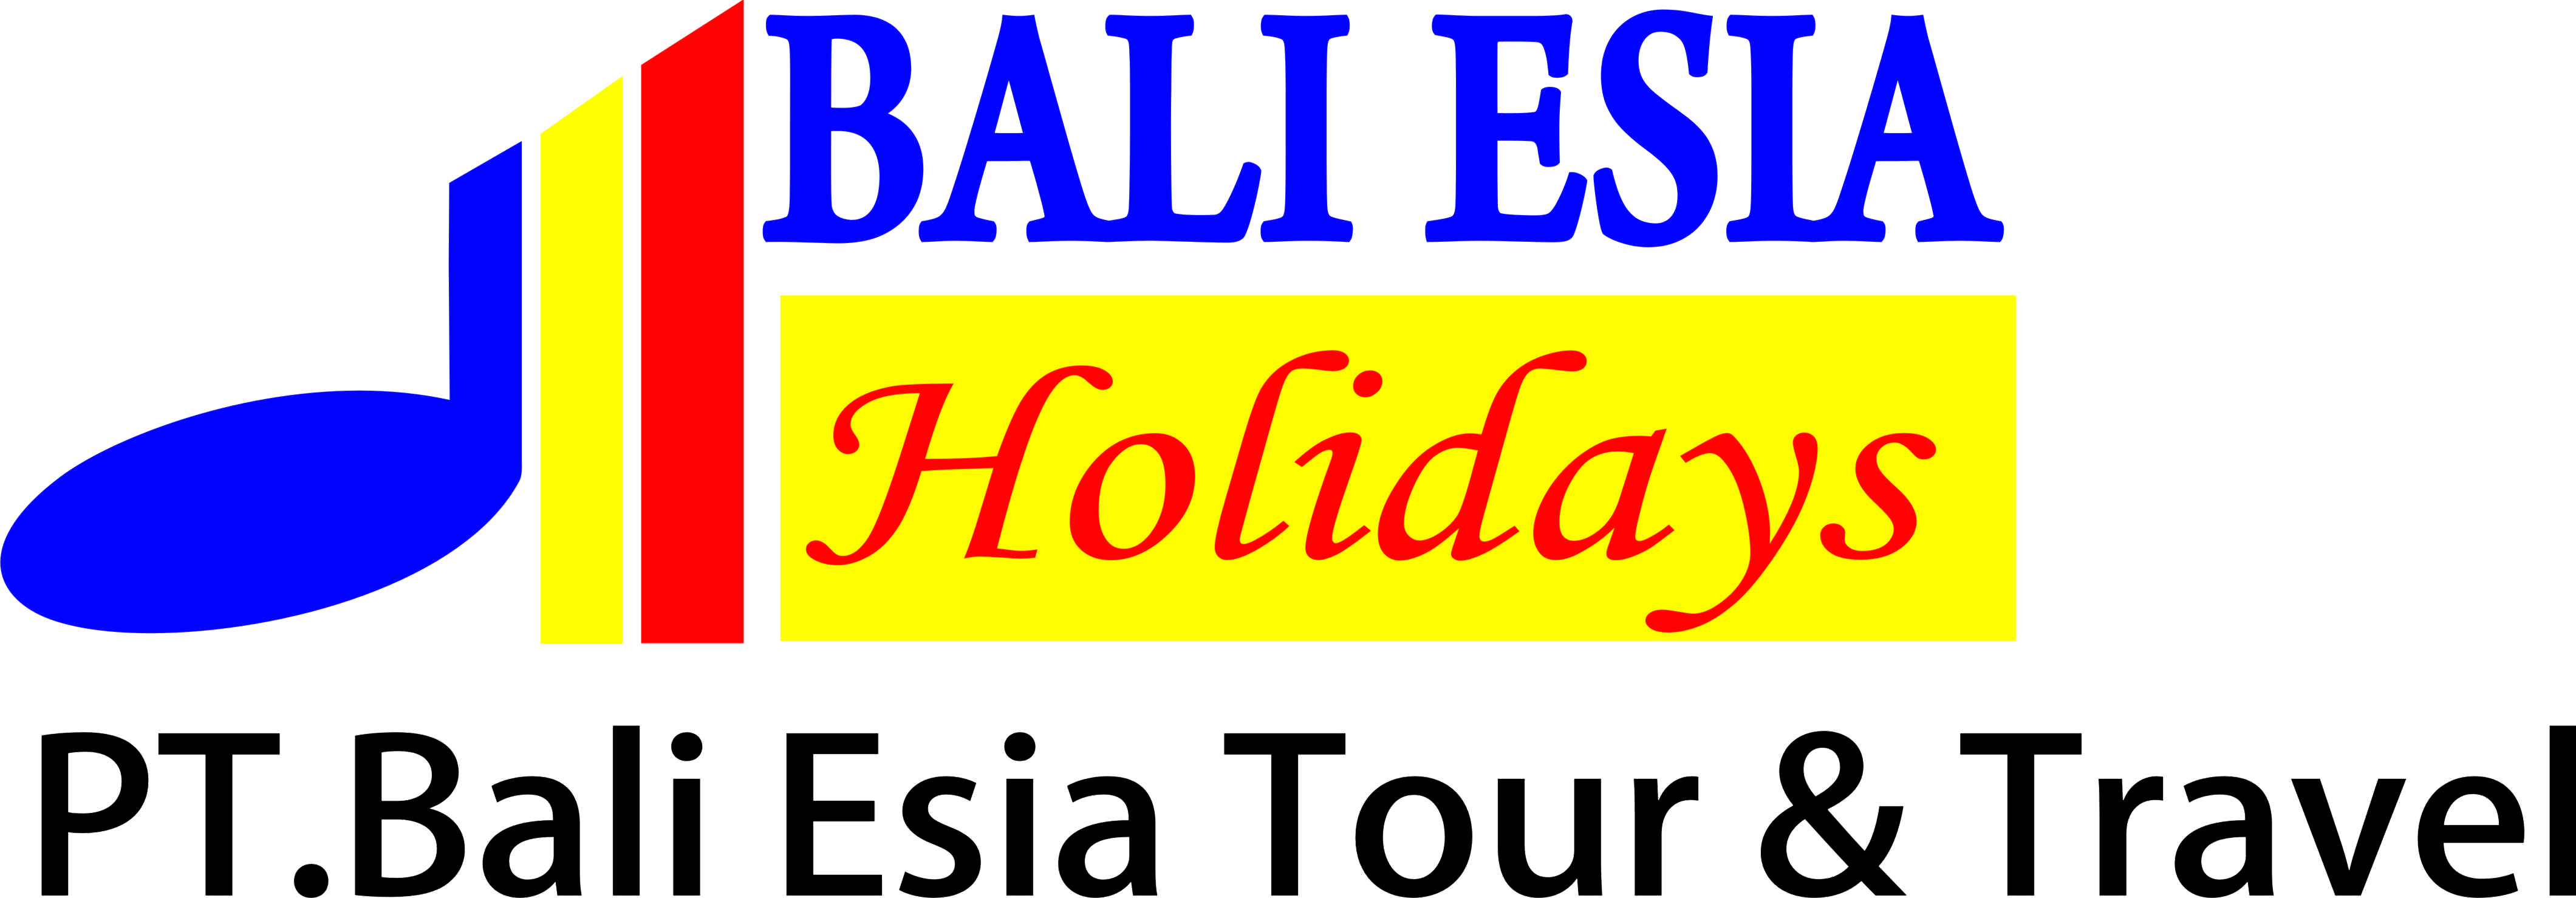 PT.Bali Esia Tour & Travel